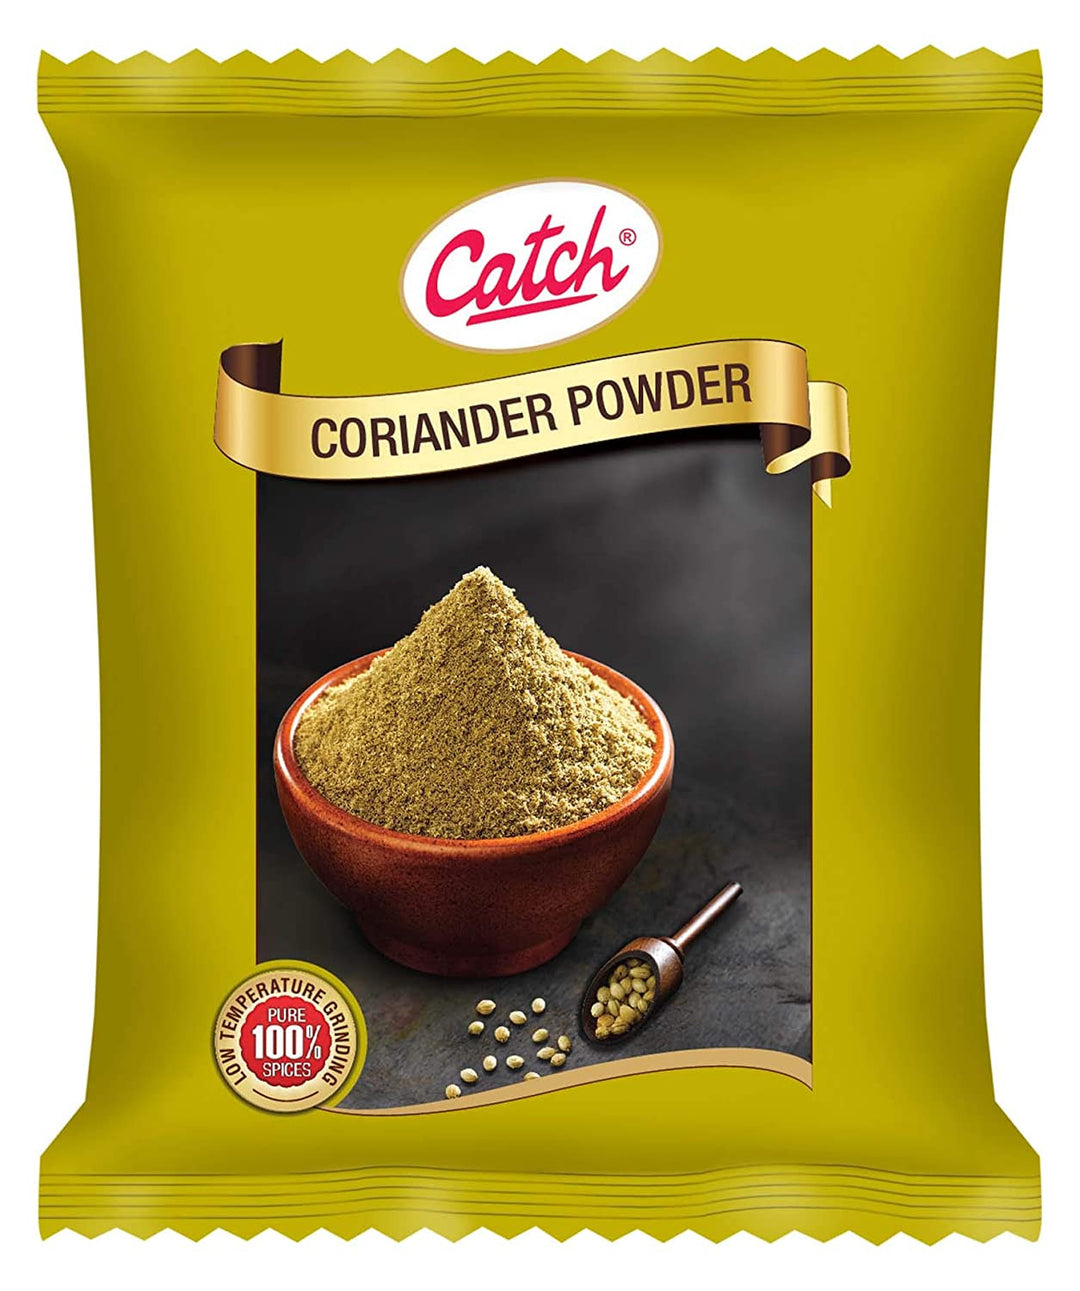 Catch Coriander Powder 200gm Pouch